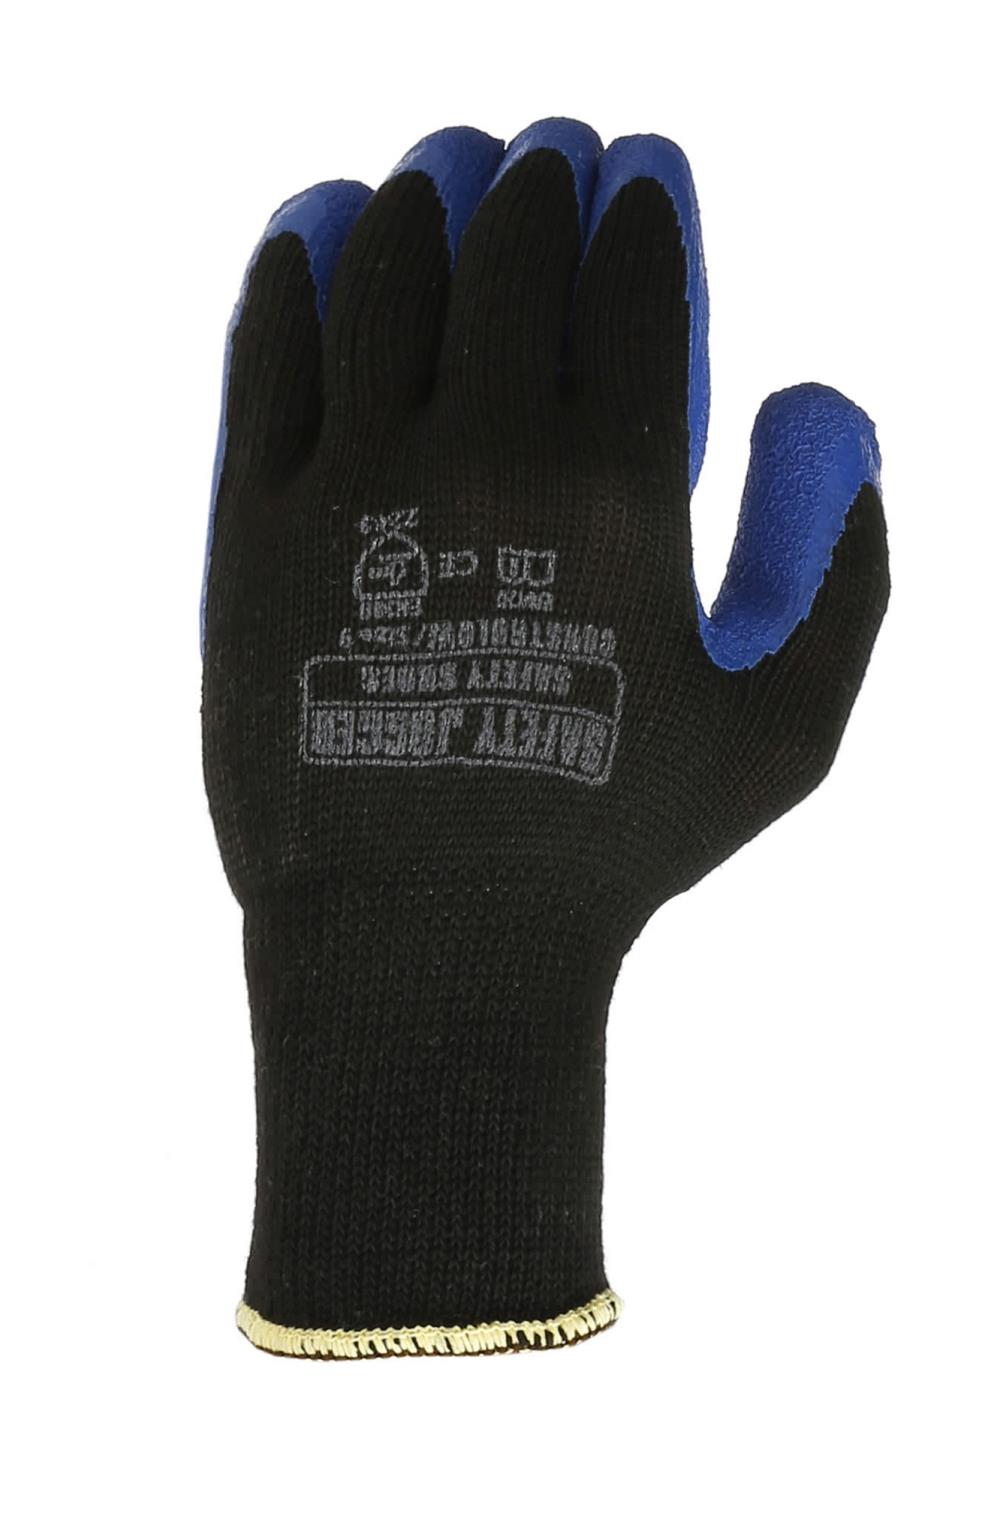 นำเข้า-ถุงมือผ้าเคลือบยางธรรมชาติ,ถุงมือถ้าเคลือบยาง,SAFETY JOGGER,Plant and Facility Equipment/Safety Equipment/Gloves & Hand Protection